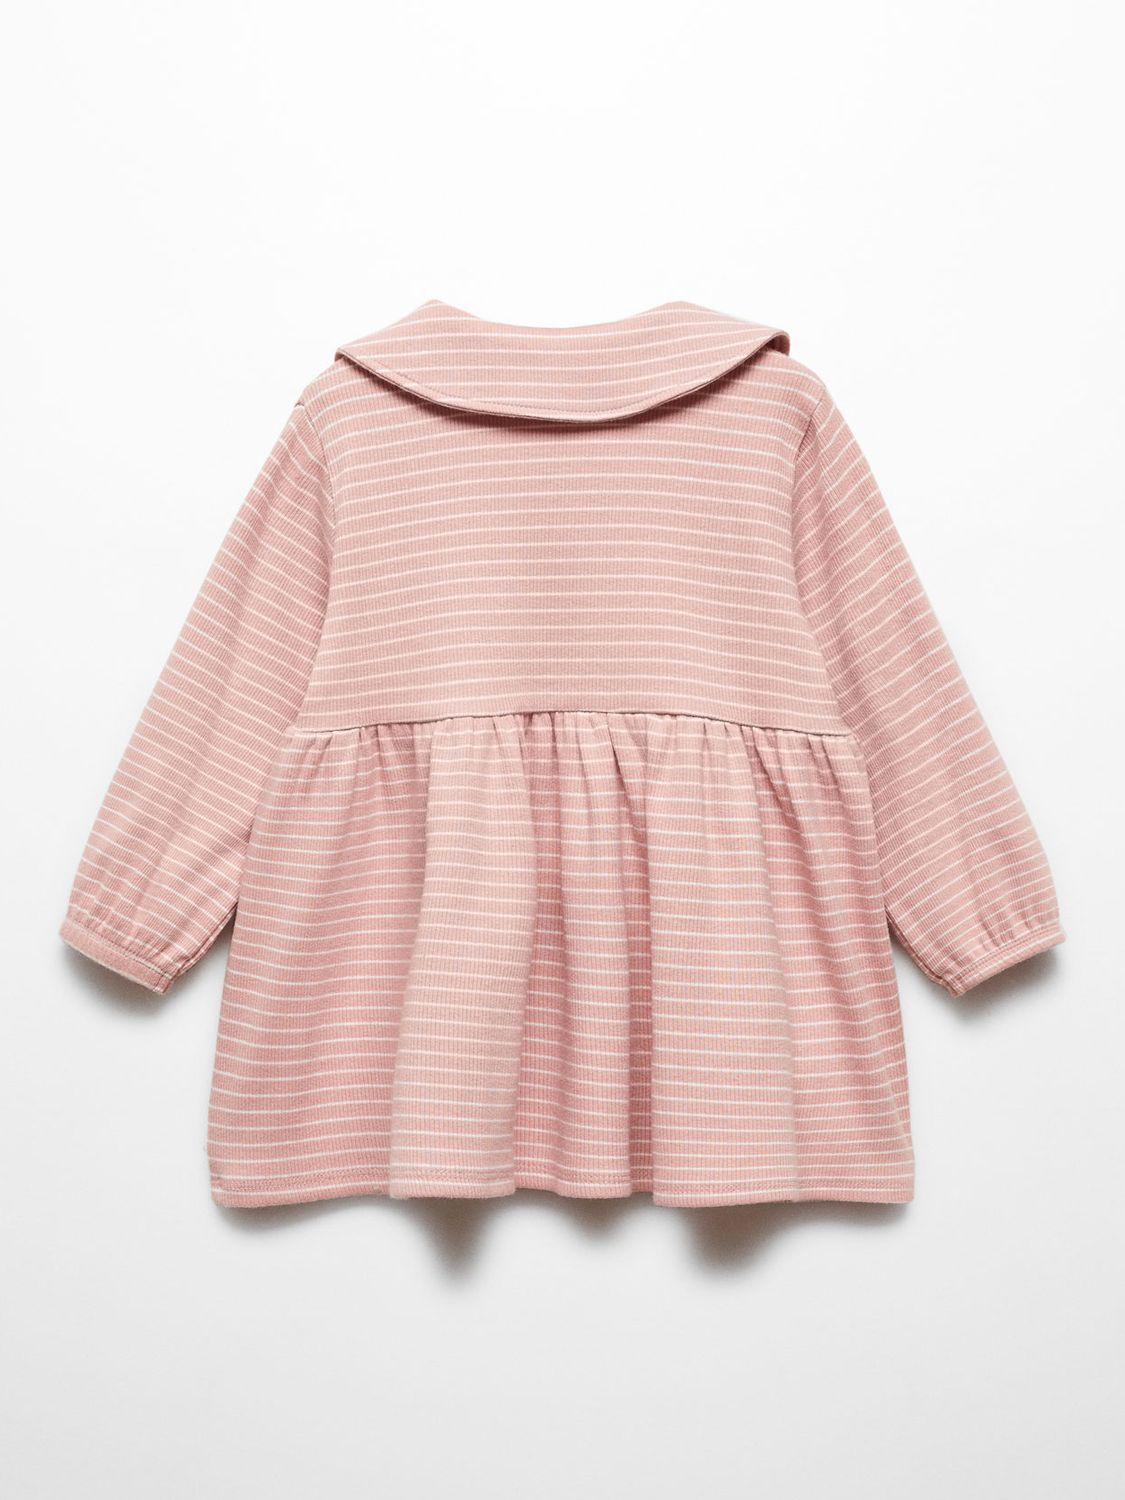 Mango Kids' Ribis Stripe Collar Dress, Pink at John Lewis & Partners